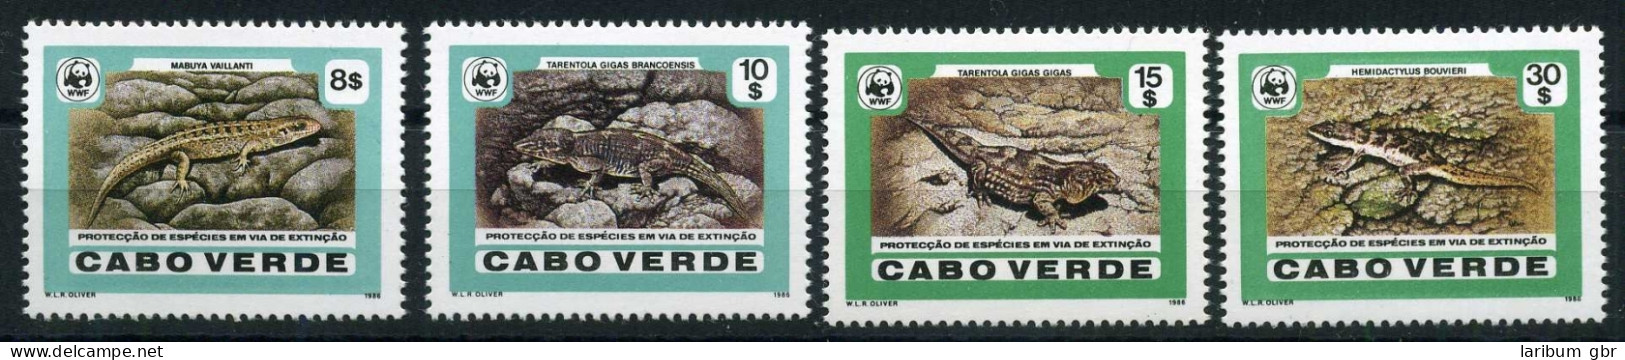 Kap Verden 500-503 Postfrisch Reptilien #JM220 - Cape Verde